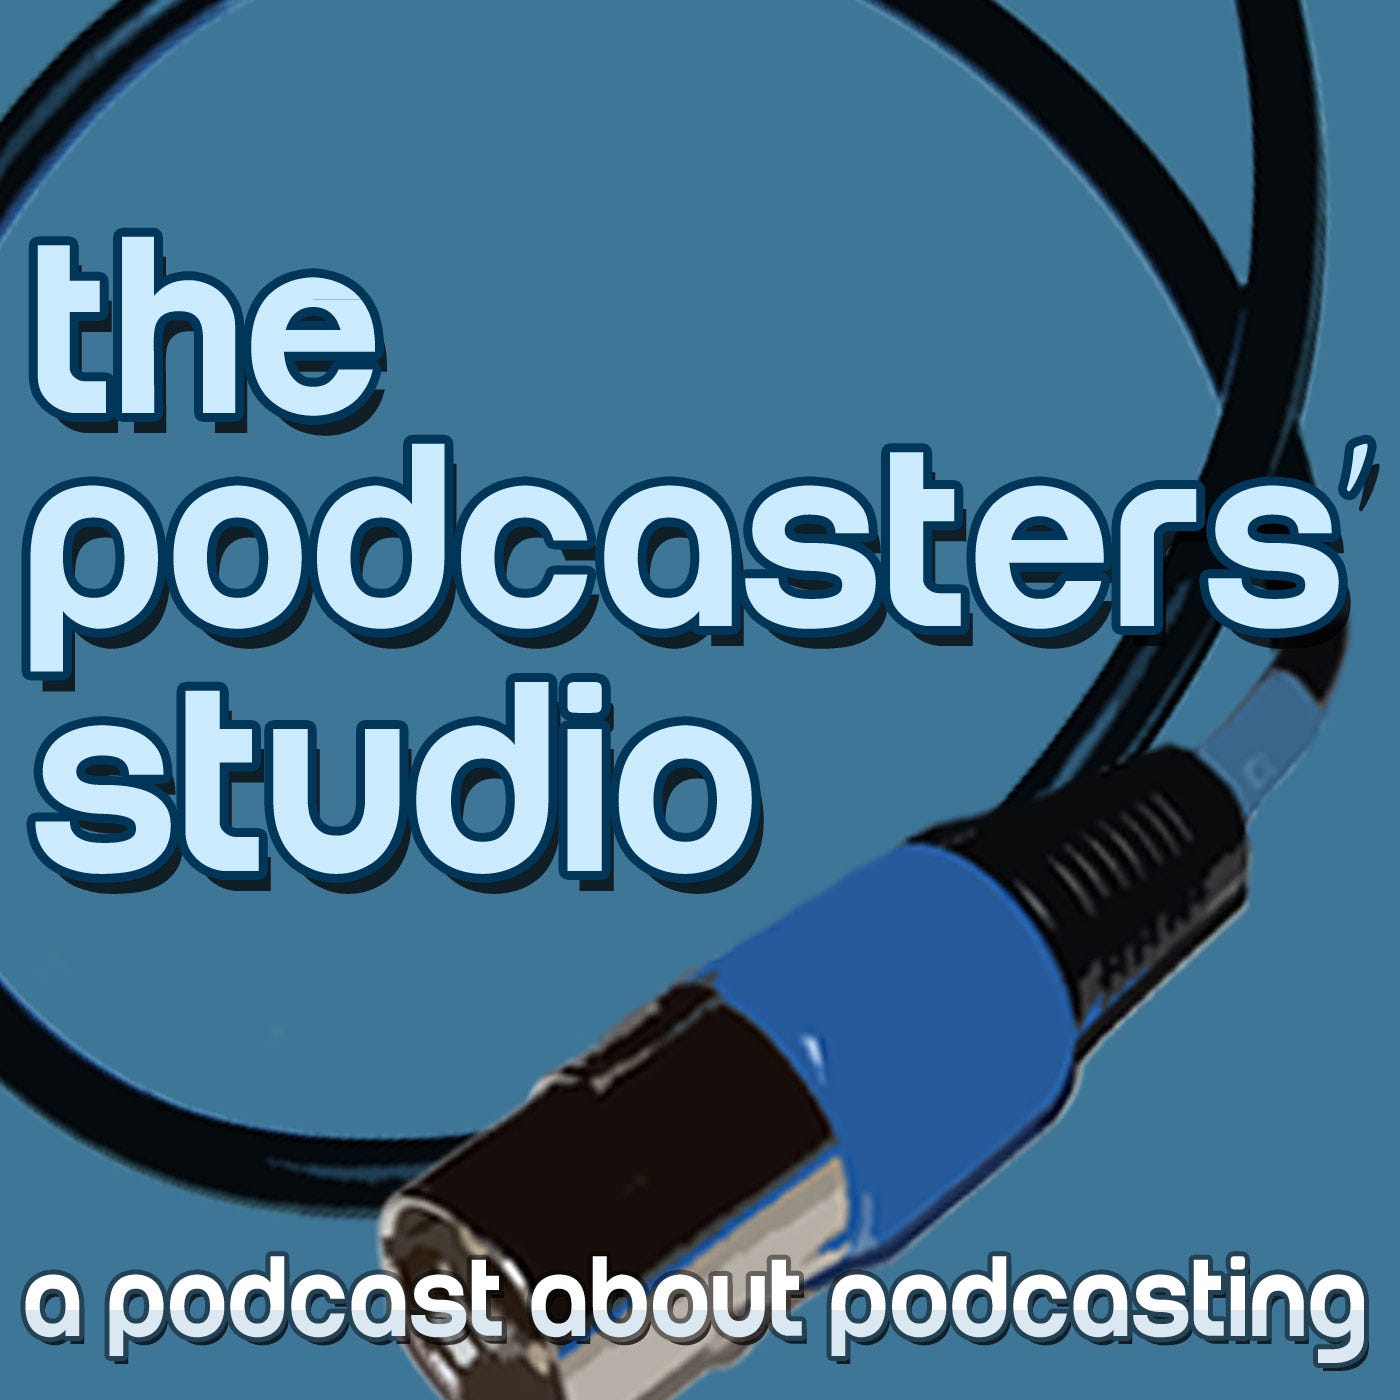 Podcast artwork van The Podcasters' studio podcast, a podcast about podcsating. Blauwe achtergrond met een opgerolde xlr kabel en de titel in de voorgrond.